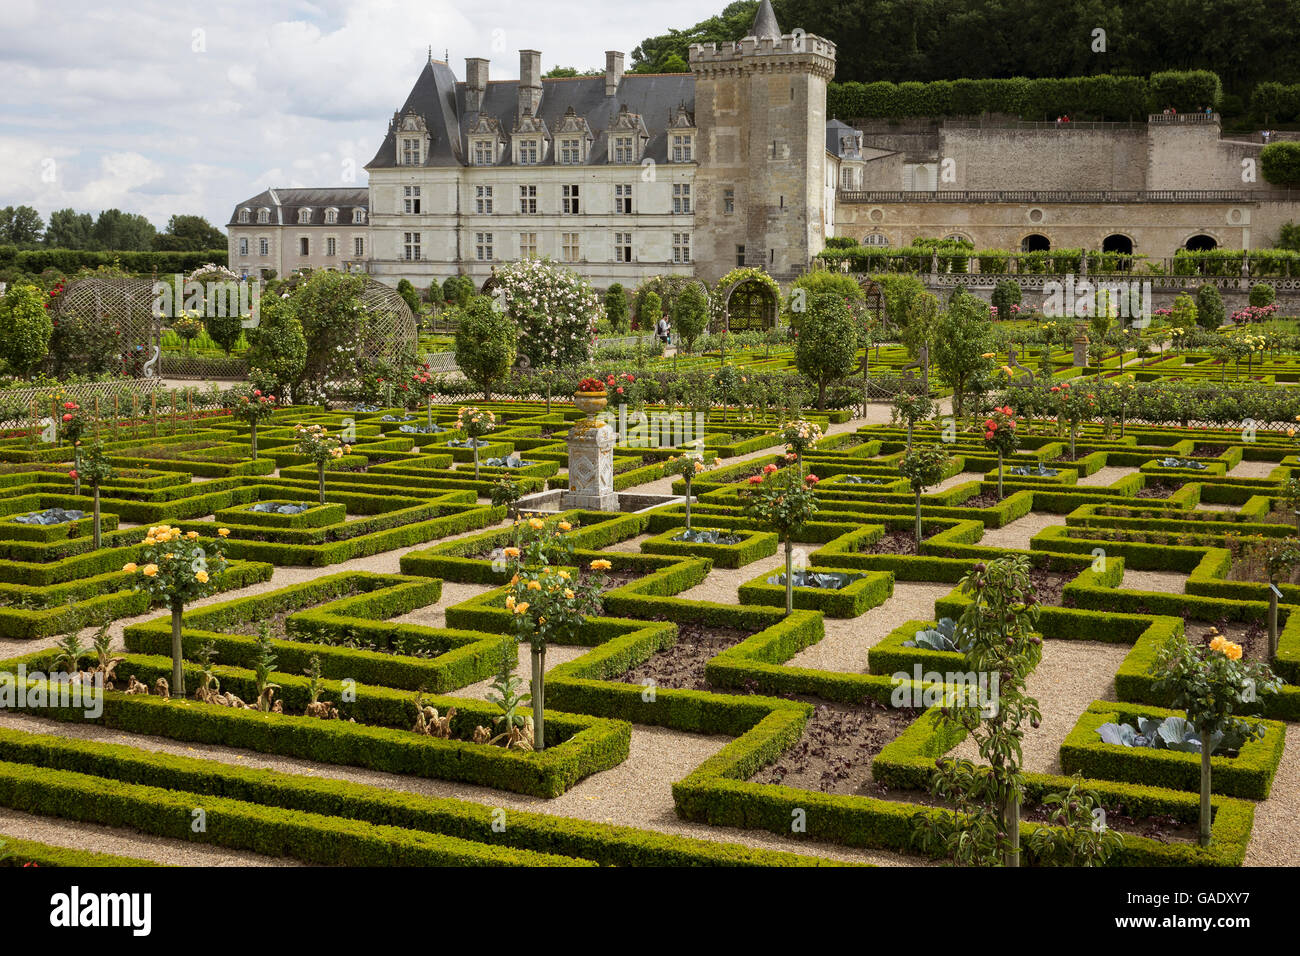 France, Indre-et-Loire, Villandry, Chateau & gardens Stock Photo